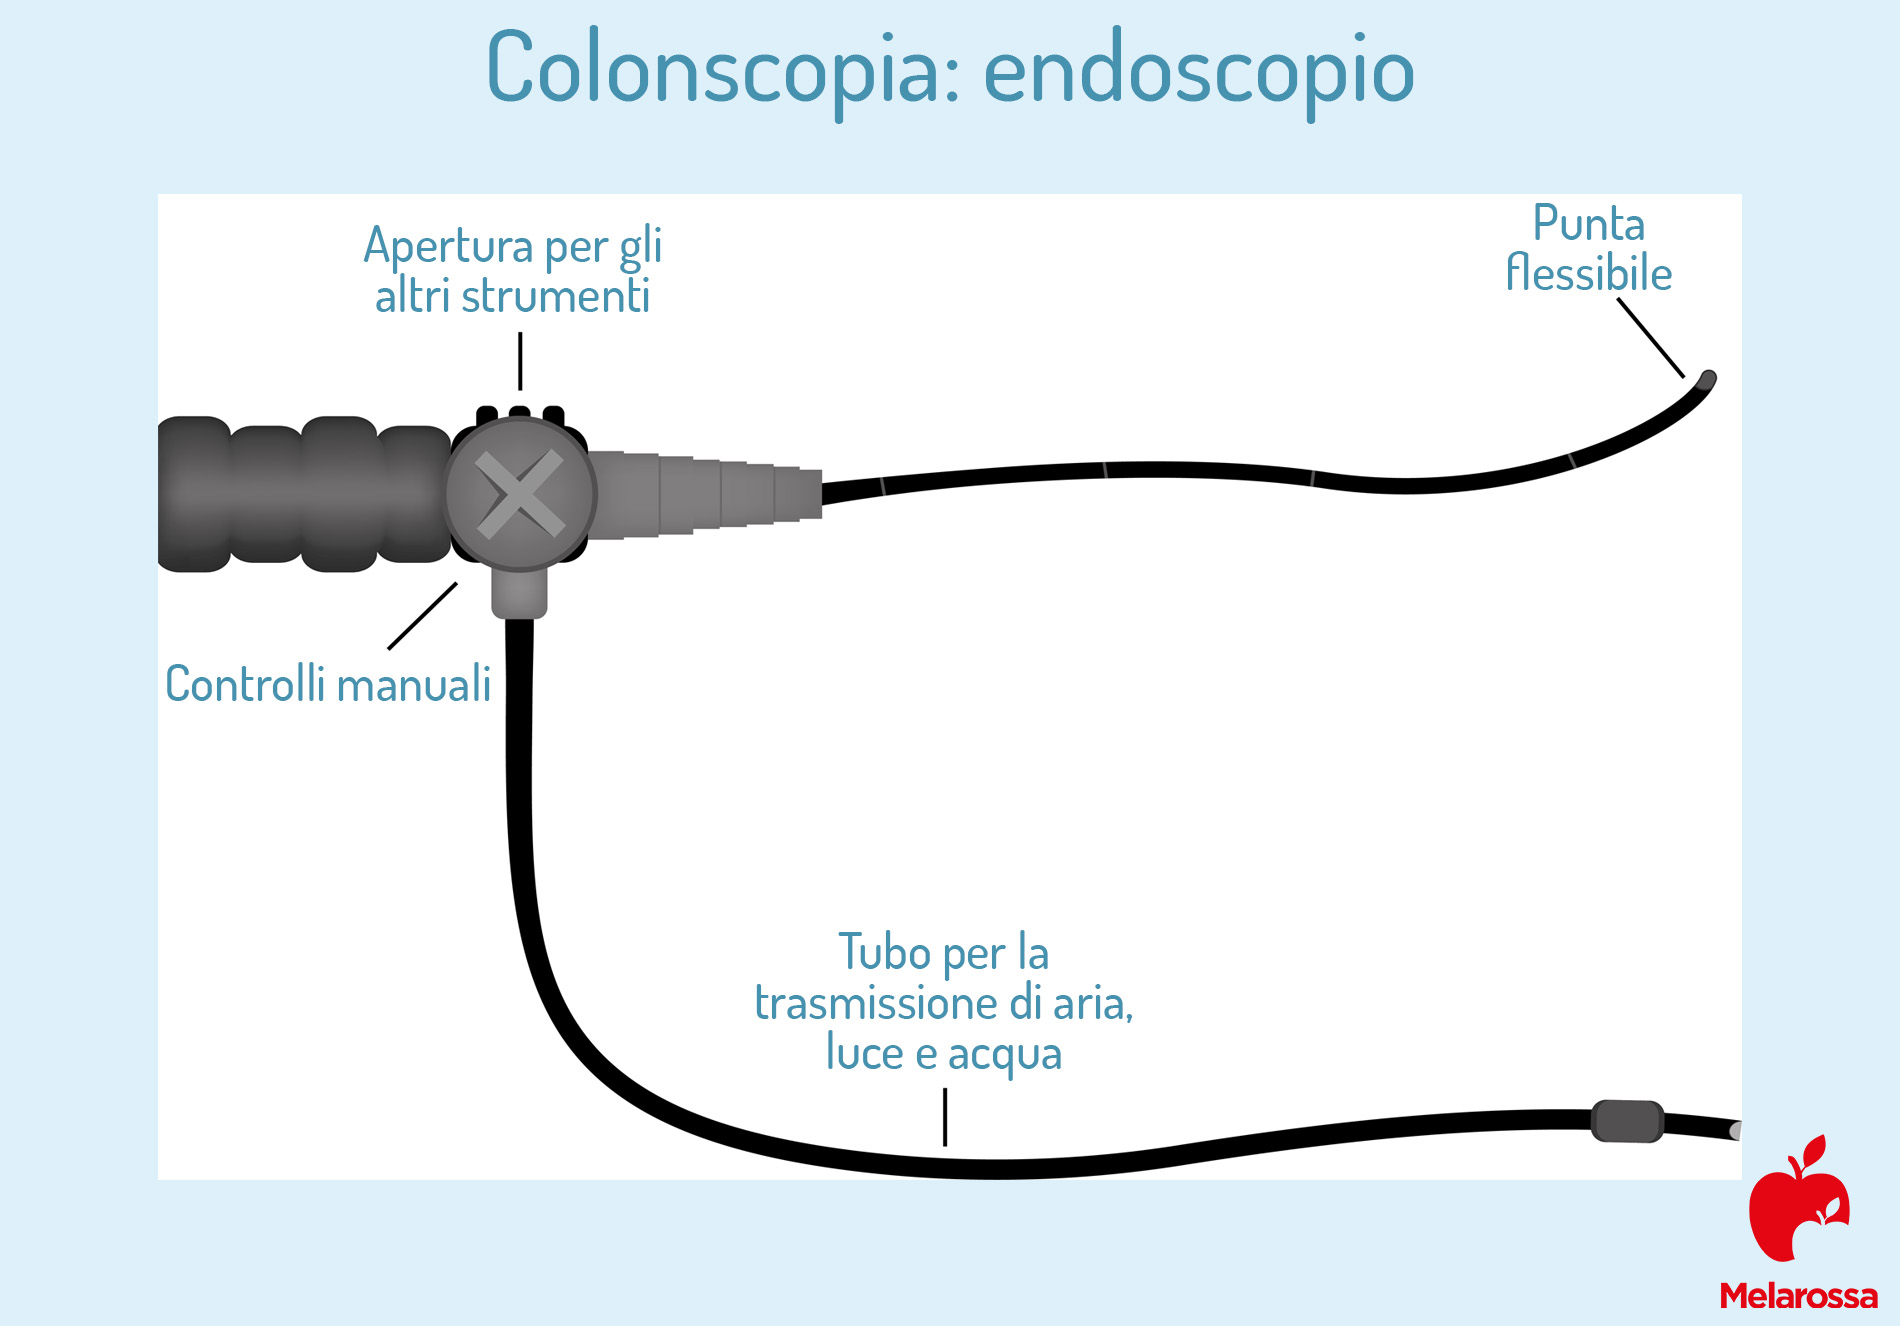 colosnscopia: com'è fatto endoscopio